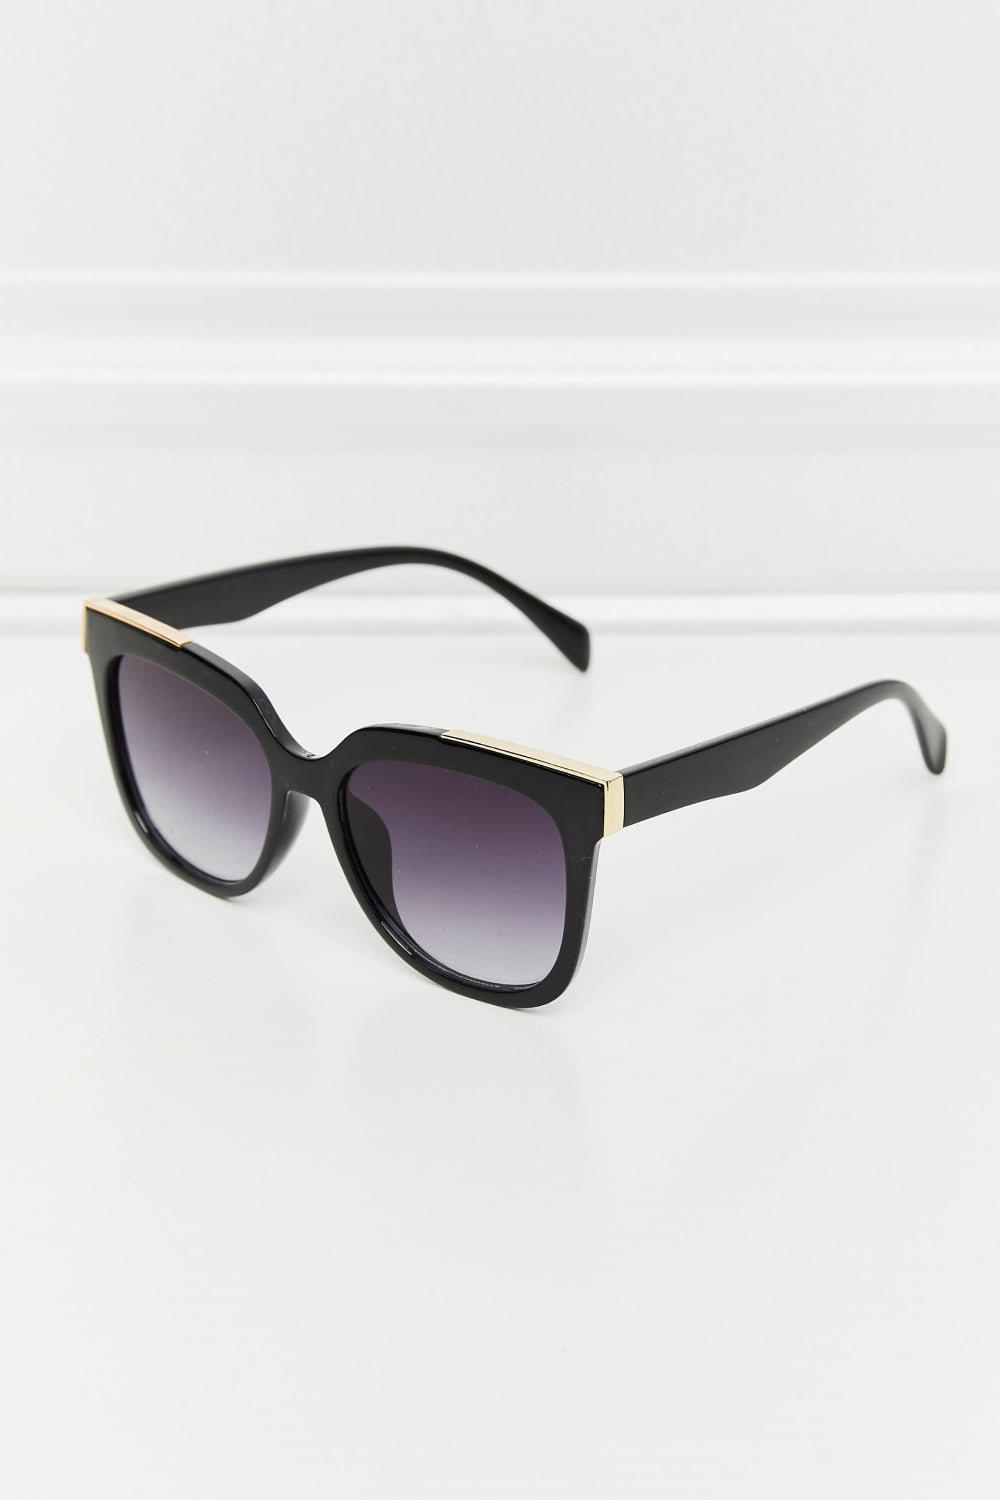 Acetate Lens Full Rim Sunglasses - Black / One Size Girl Code